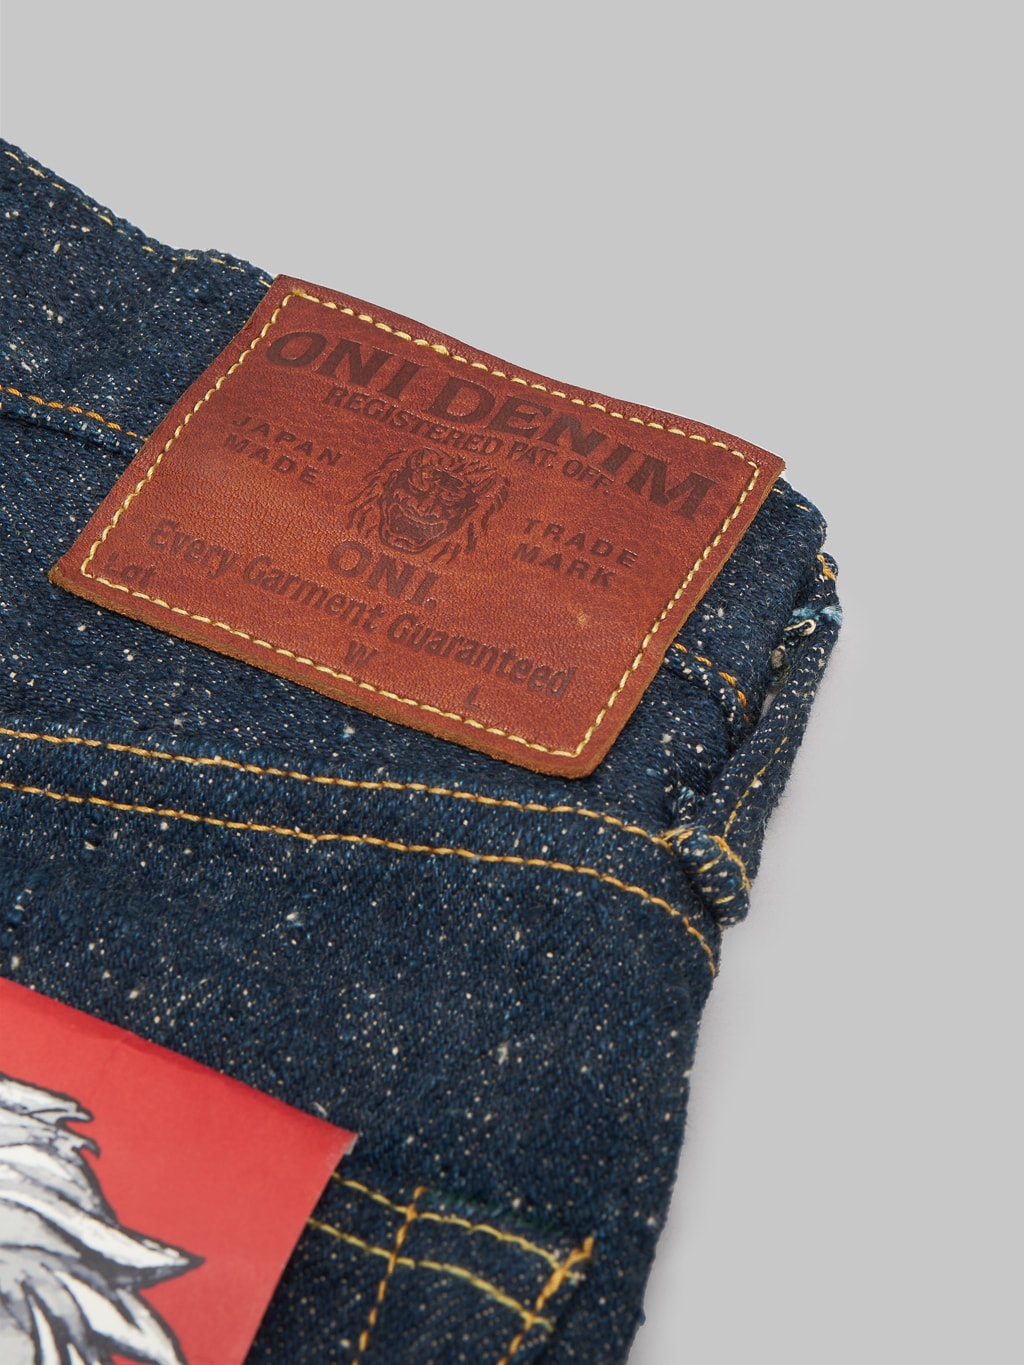 ONI 622 Secret Super Rough 20oz Jeans leather patch